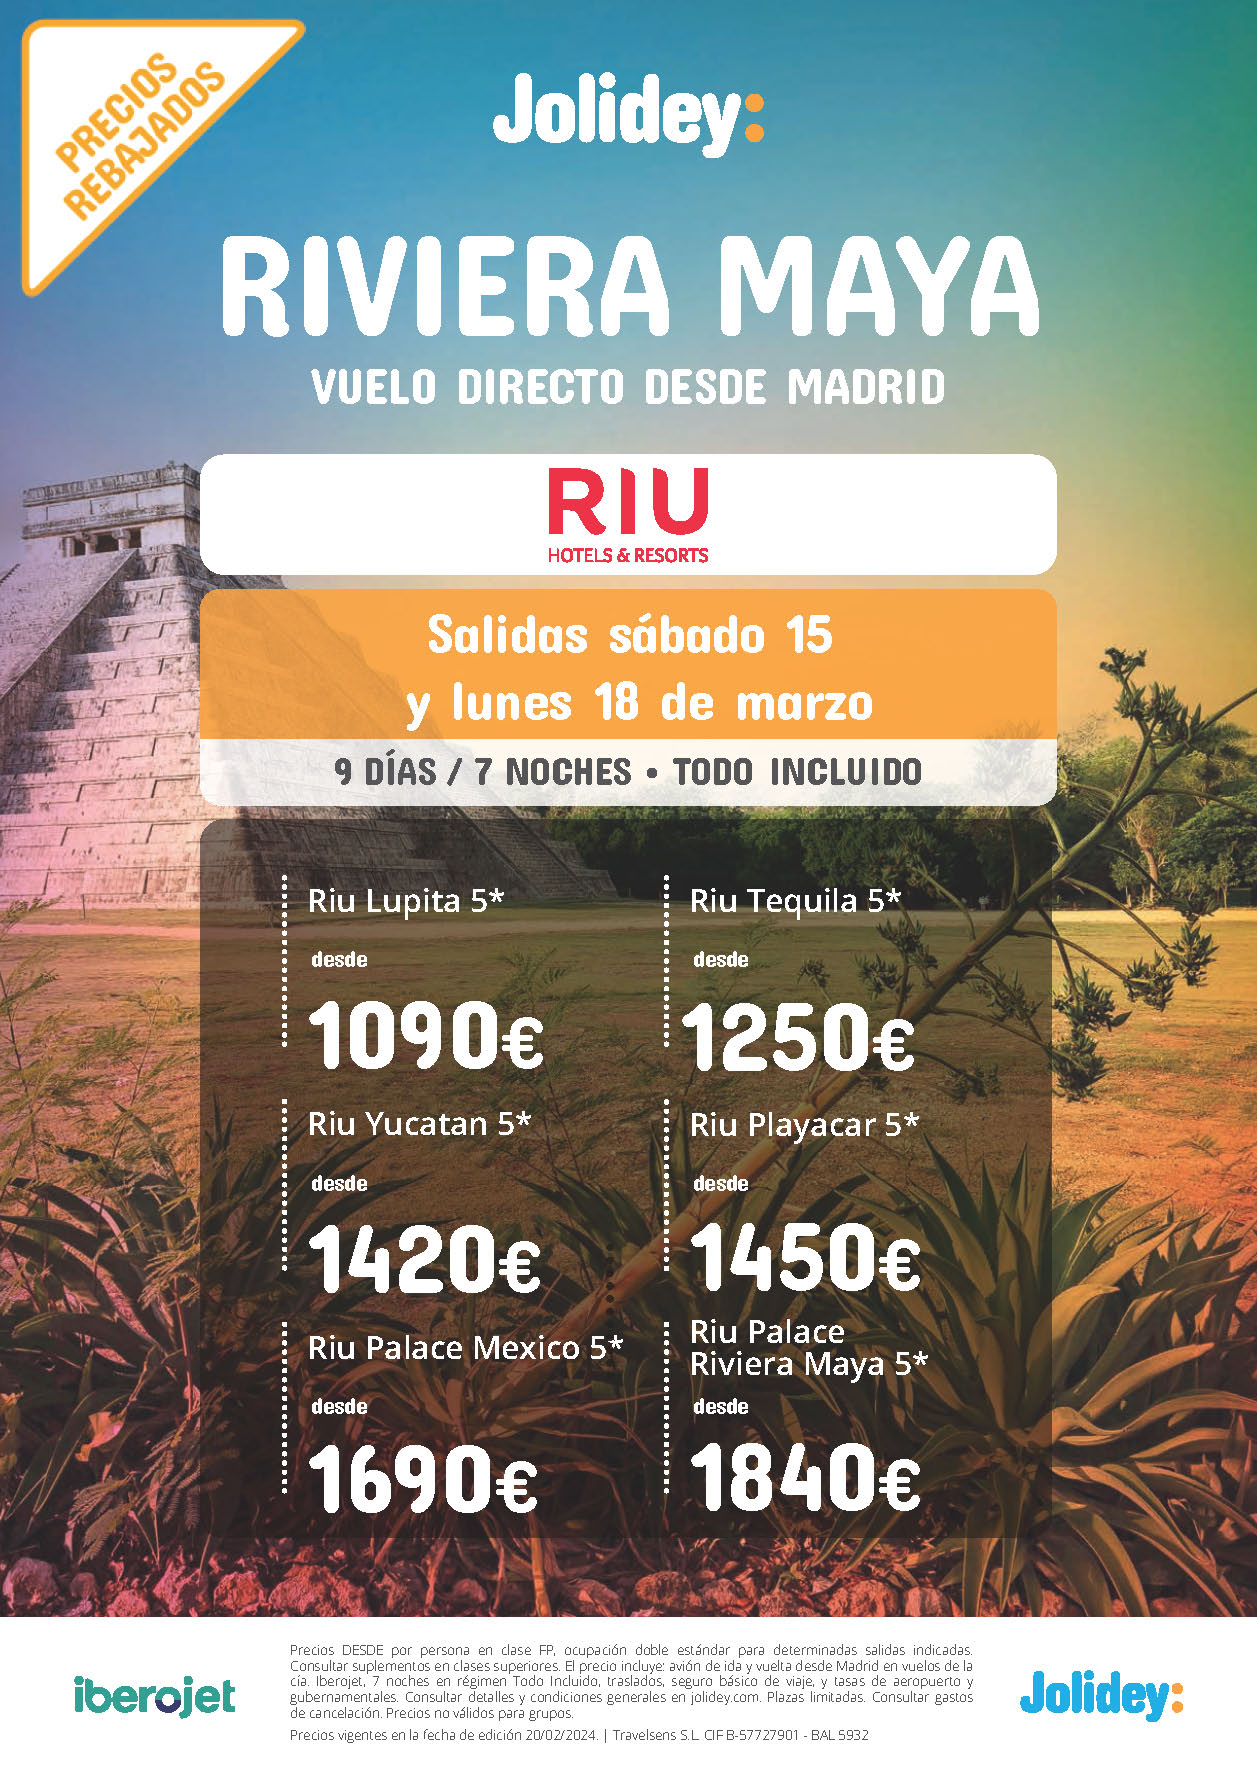 Oferta Jolidey Estancia en Riviera Maya Mexico 9 dias Hotel Riu 5 estrellas Todo Incluido salidas Marzo 2024 en vuelo directo desde Madrid